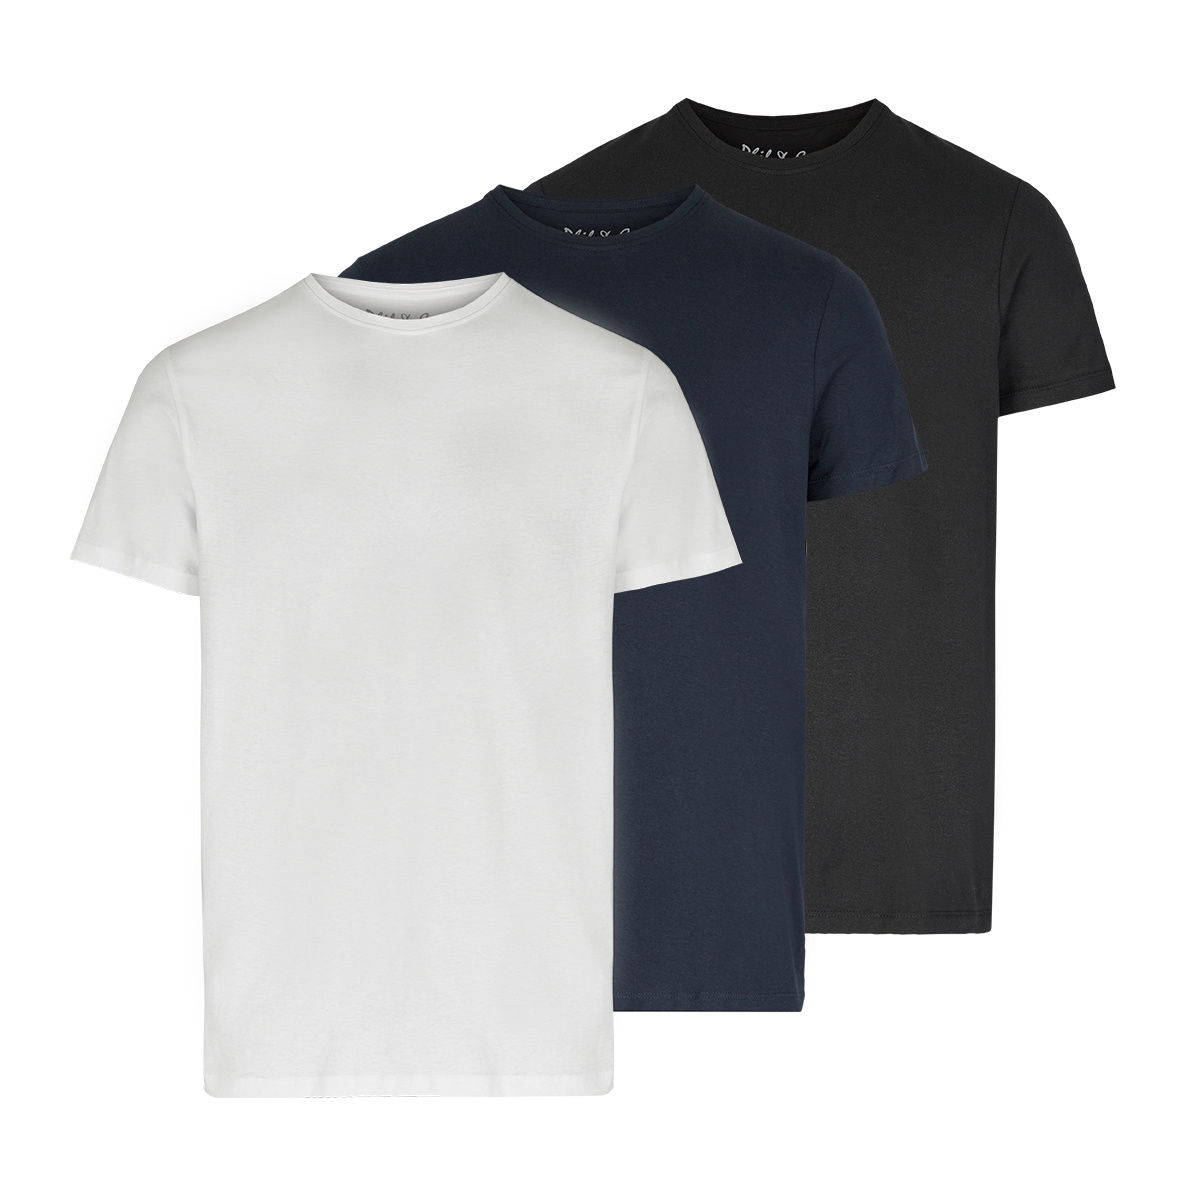 achterstalligheid Overwegen Bad Phil & Co Ondershirt Heren T-shirt Ronde Hals 3-Pack Zwart Blauw Wit |  Underwear District